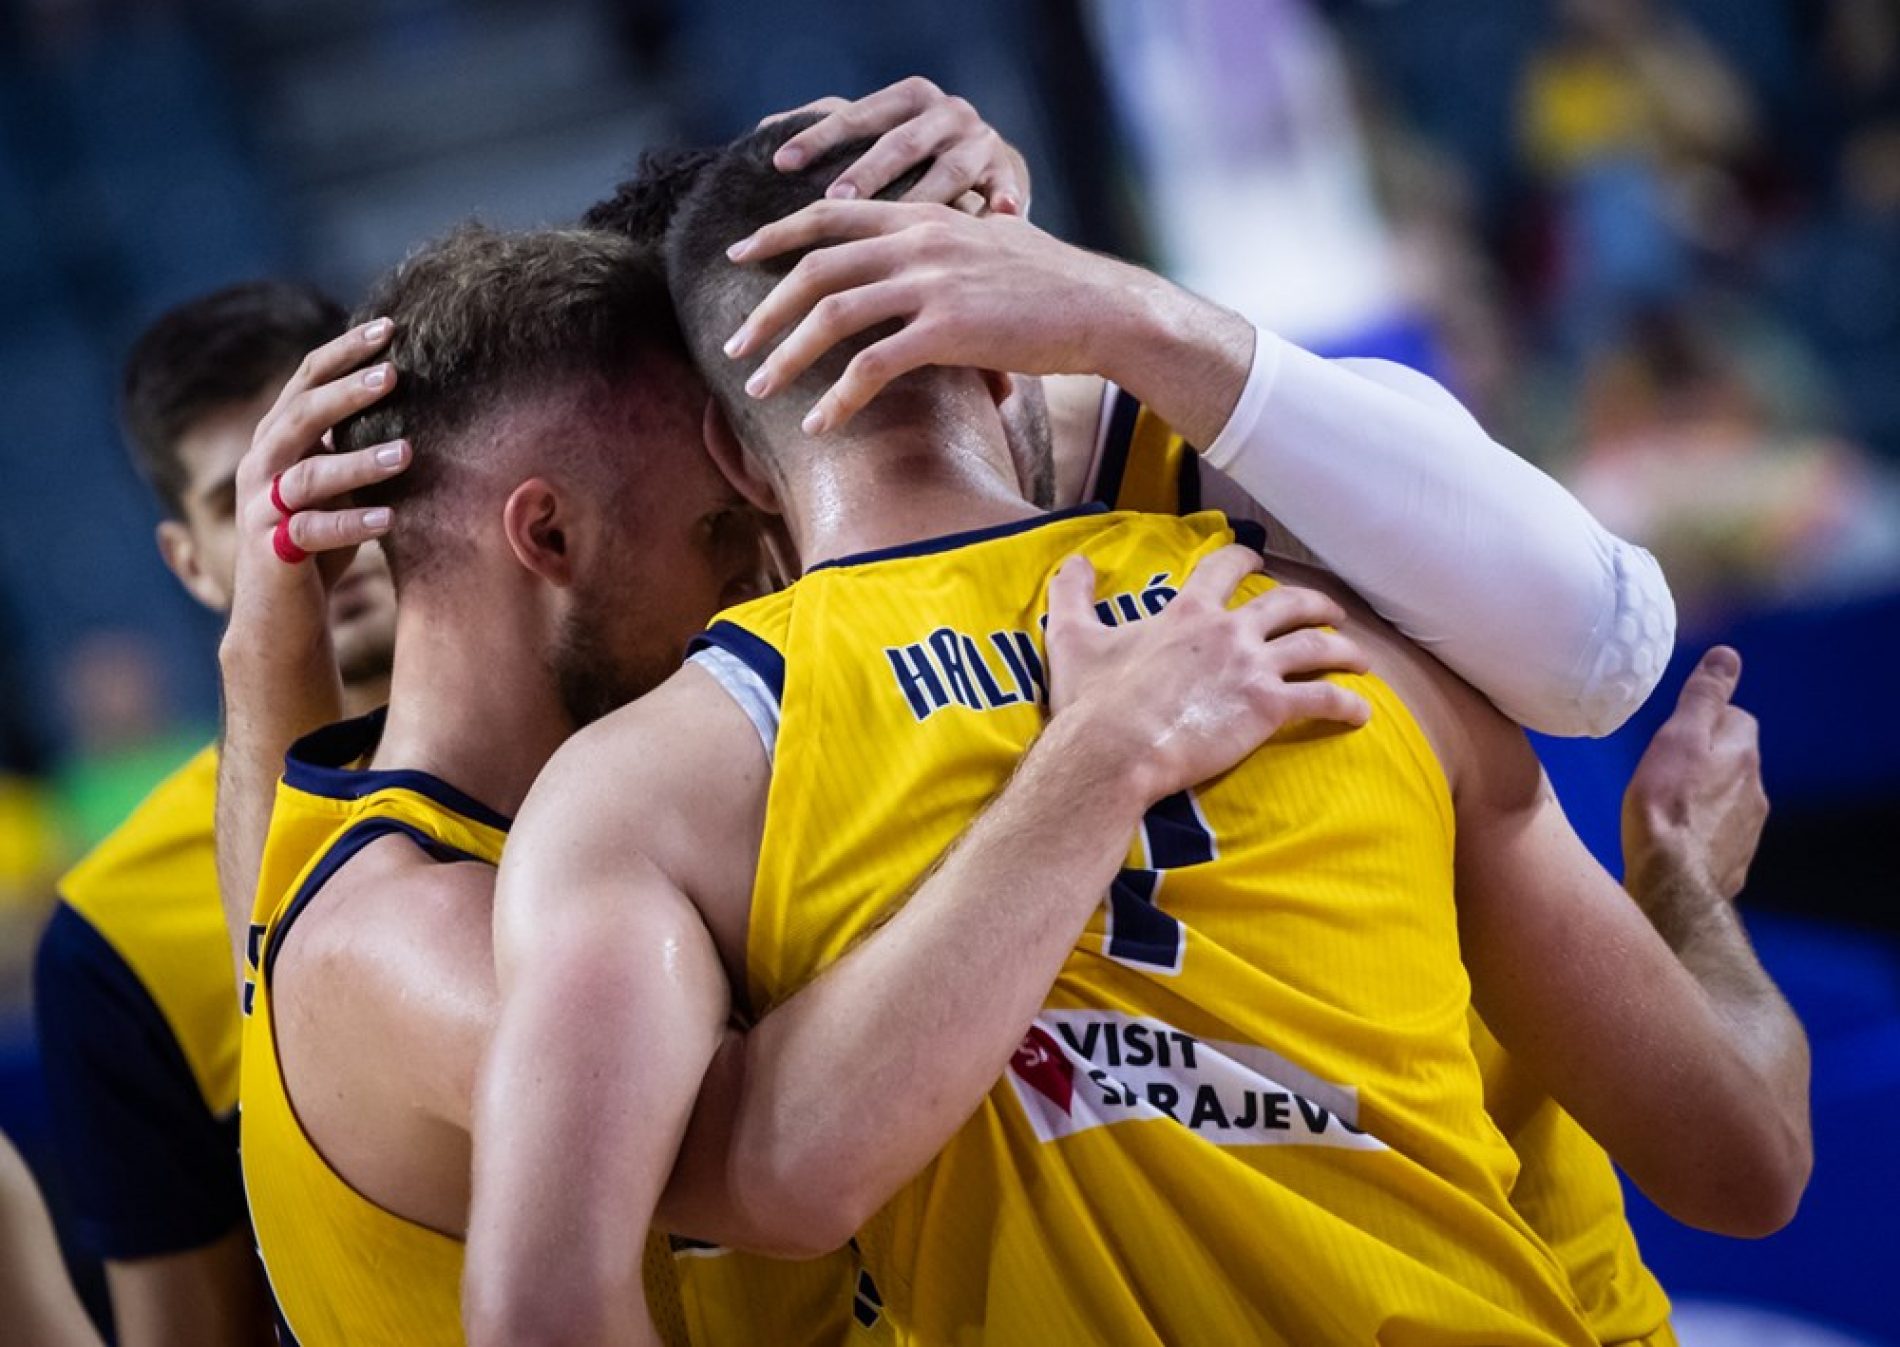 Eurobasket: Bosna i Hercegovina danas igra protiv aktuelnog prvaka Evrope